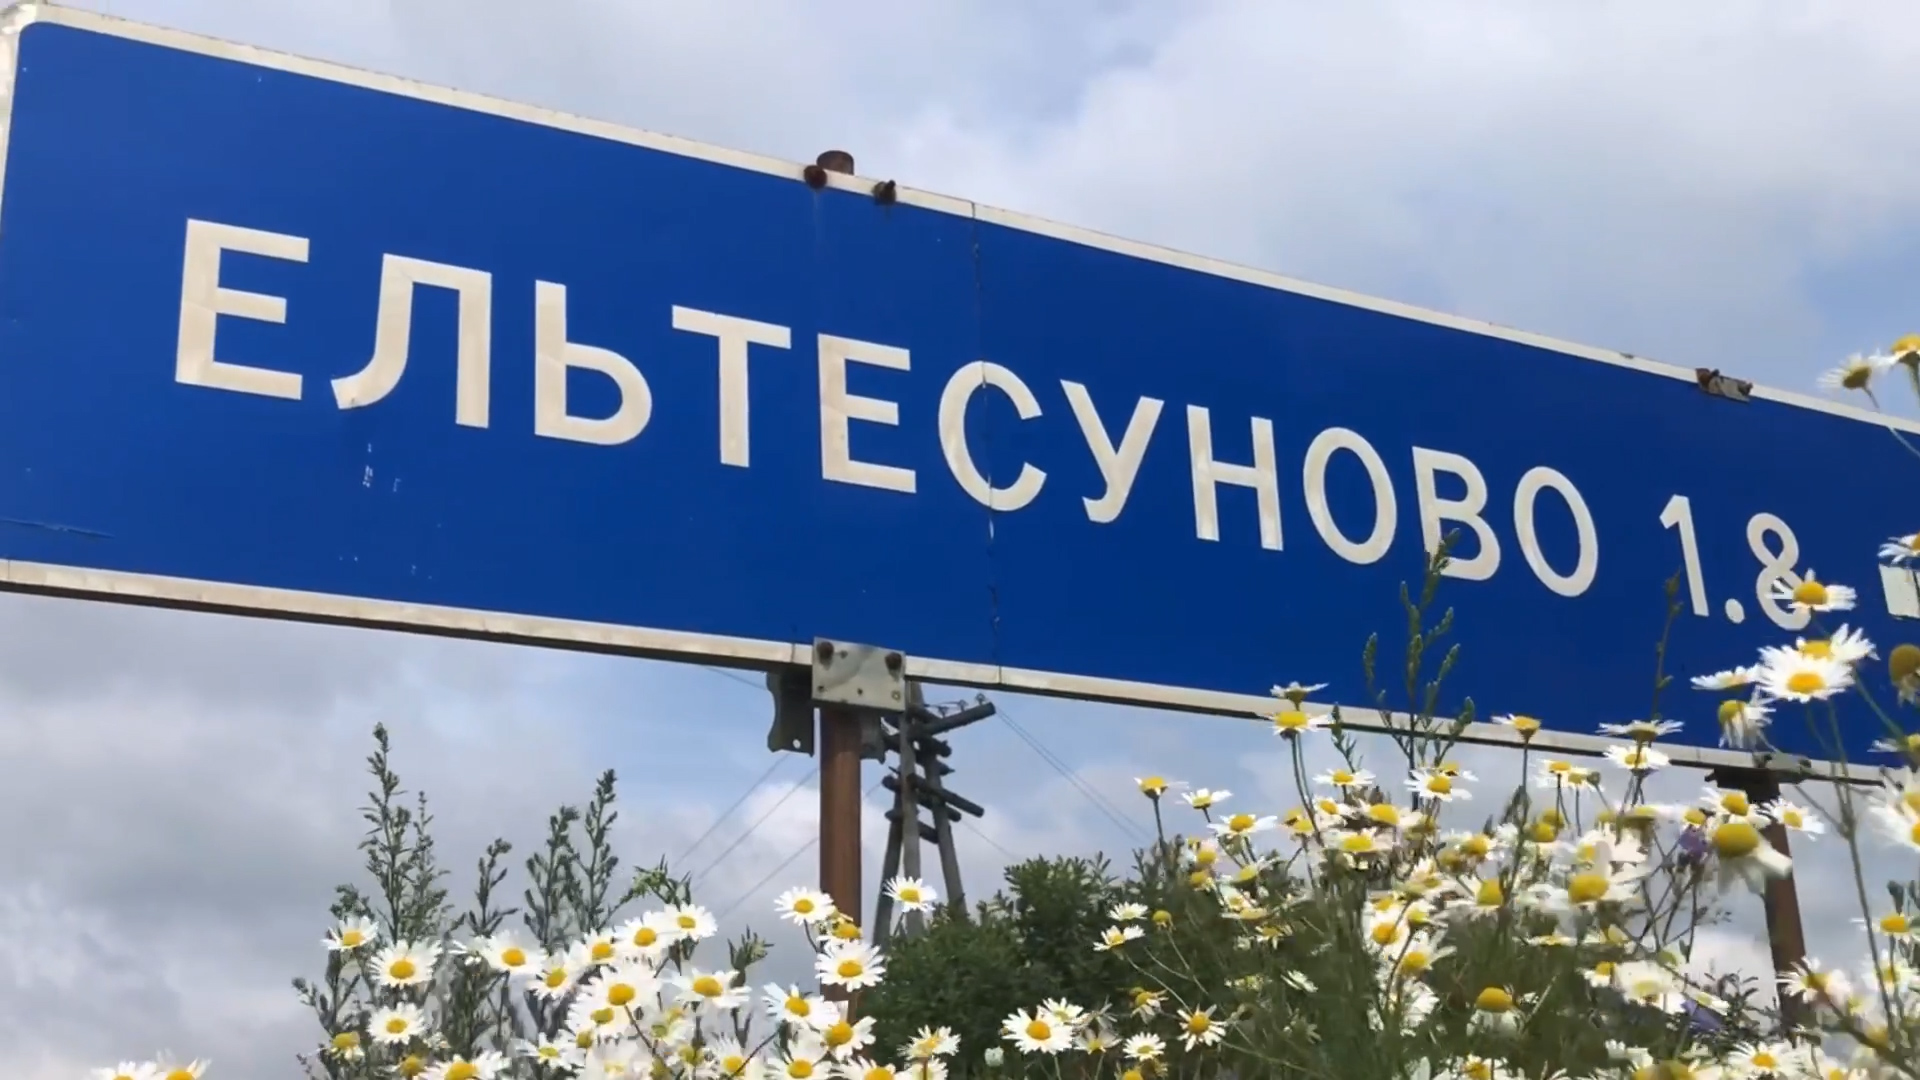 Село Ельтесуново стало победителем конкурса малых населенных пунктов